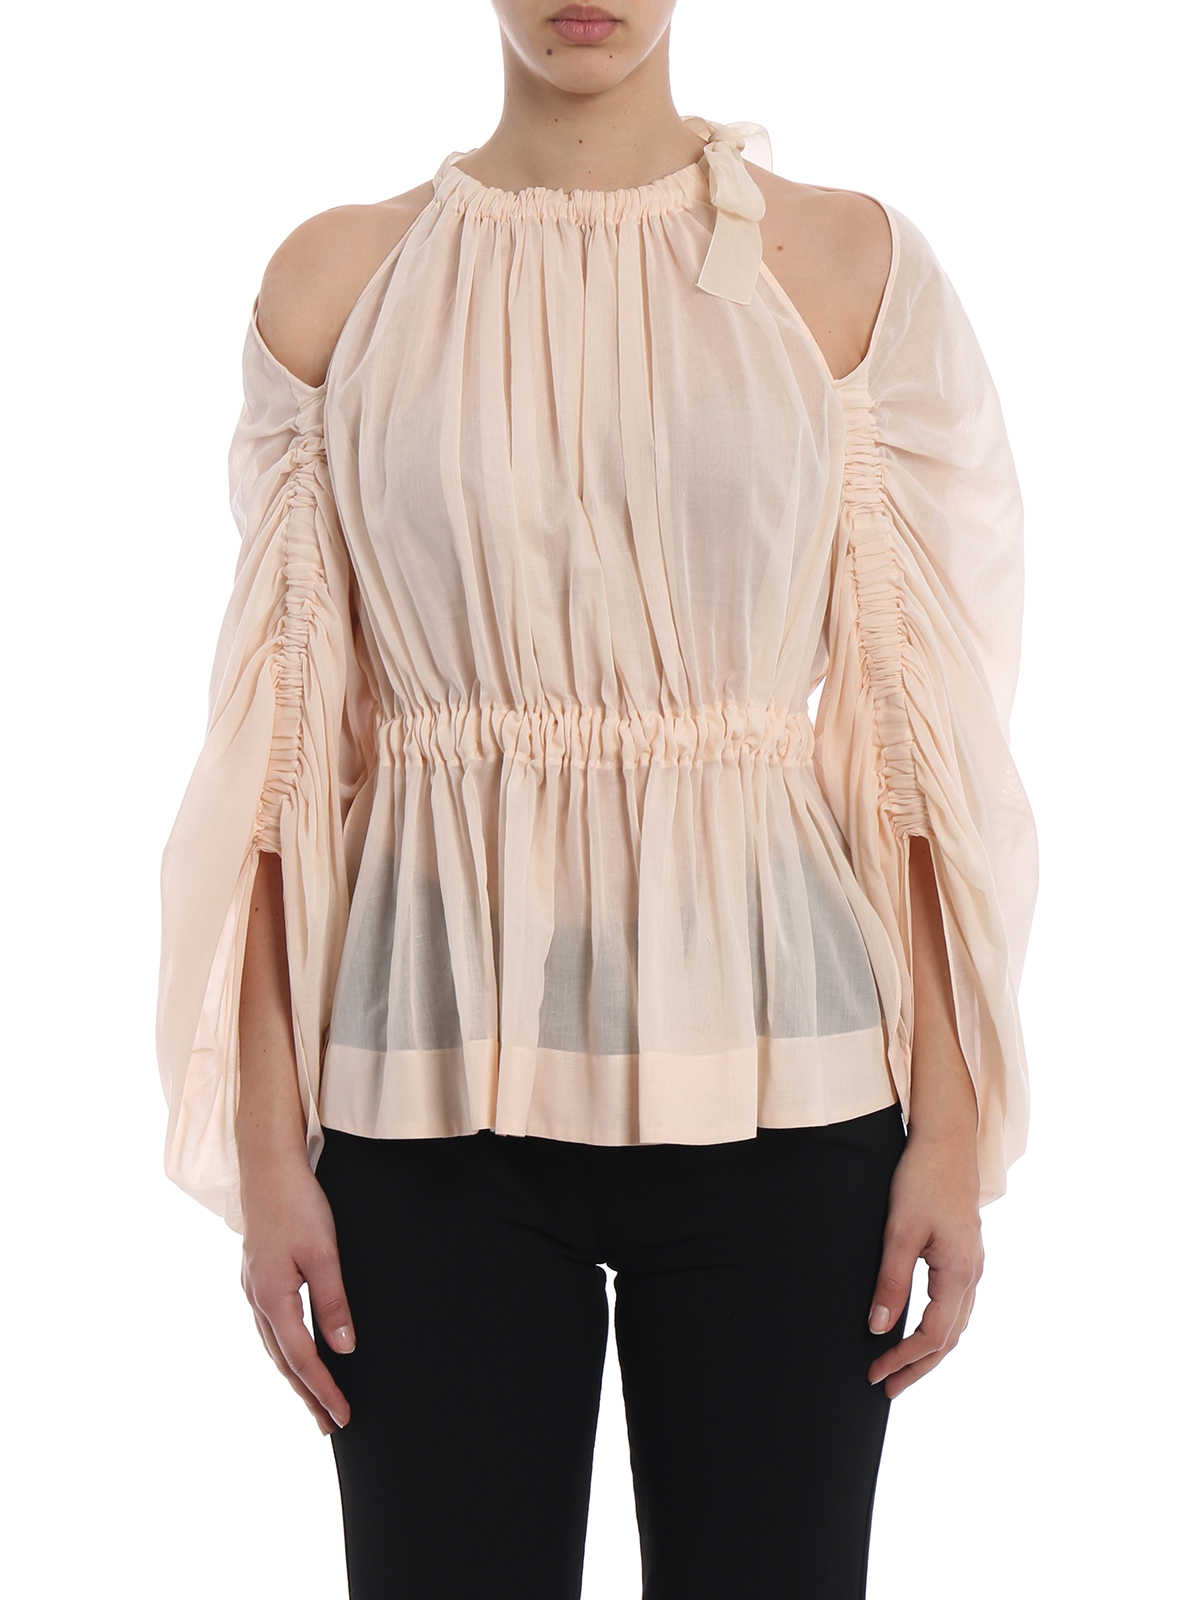 Fendi - Light pink cotton voile blouse 